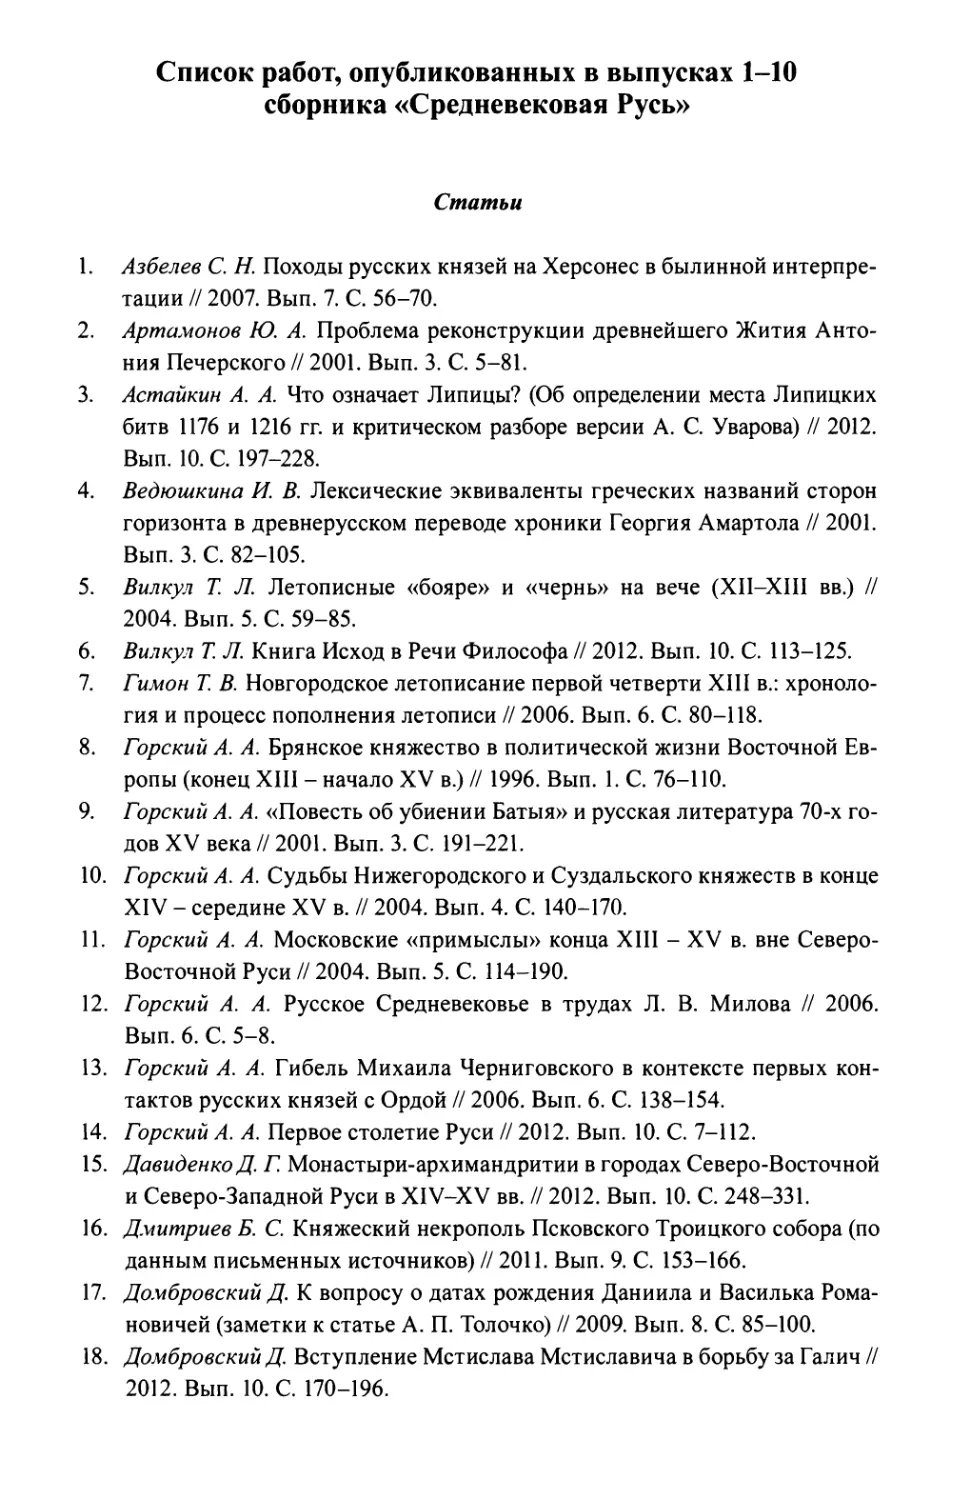 Список статей, опубликованных в выпусках 1–10, сборника «Средневековая Русь»